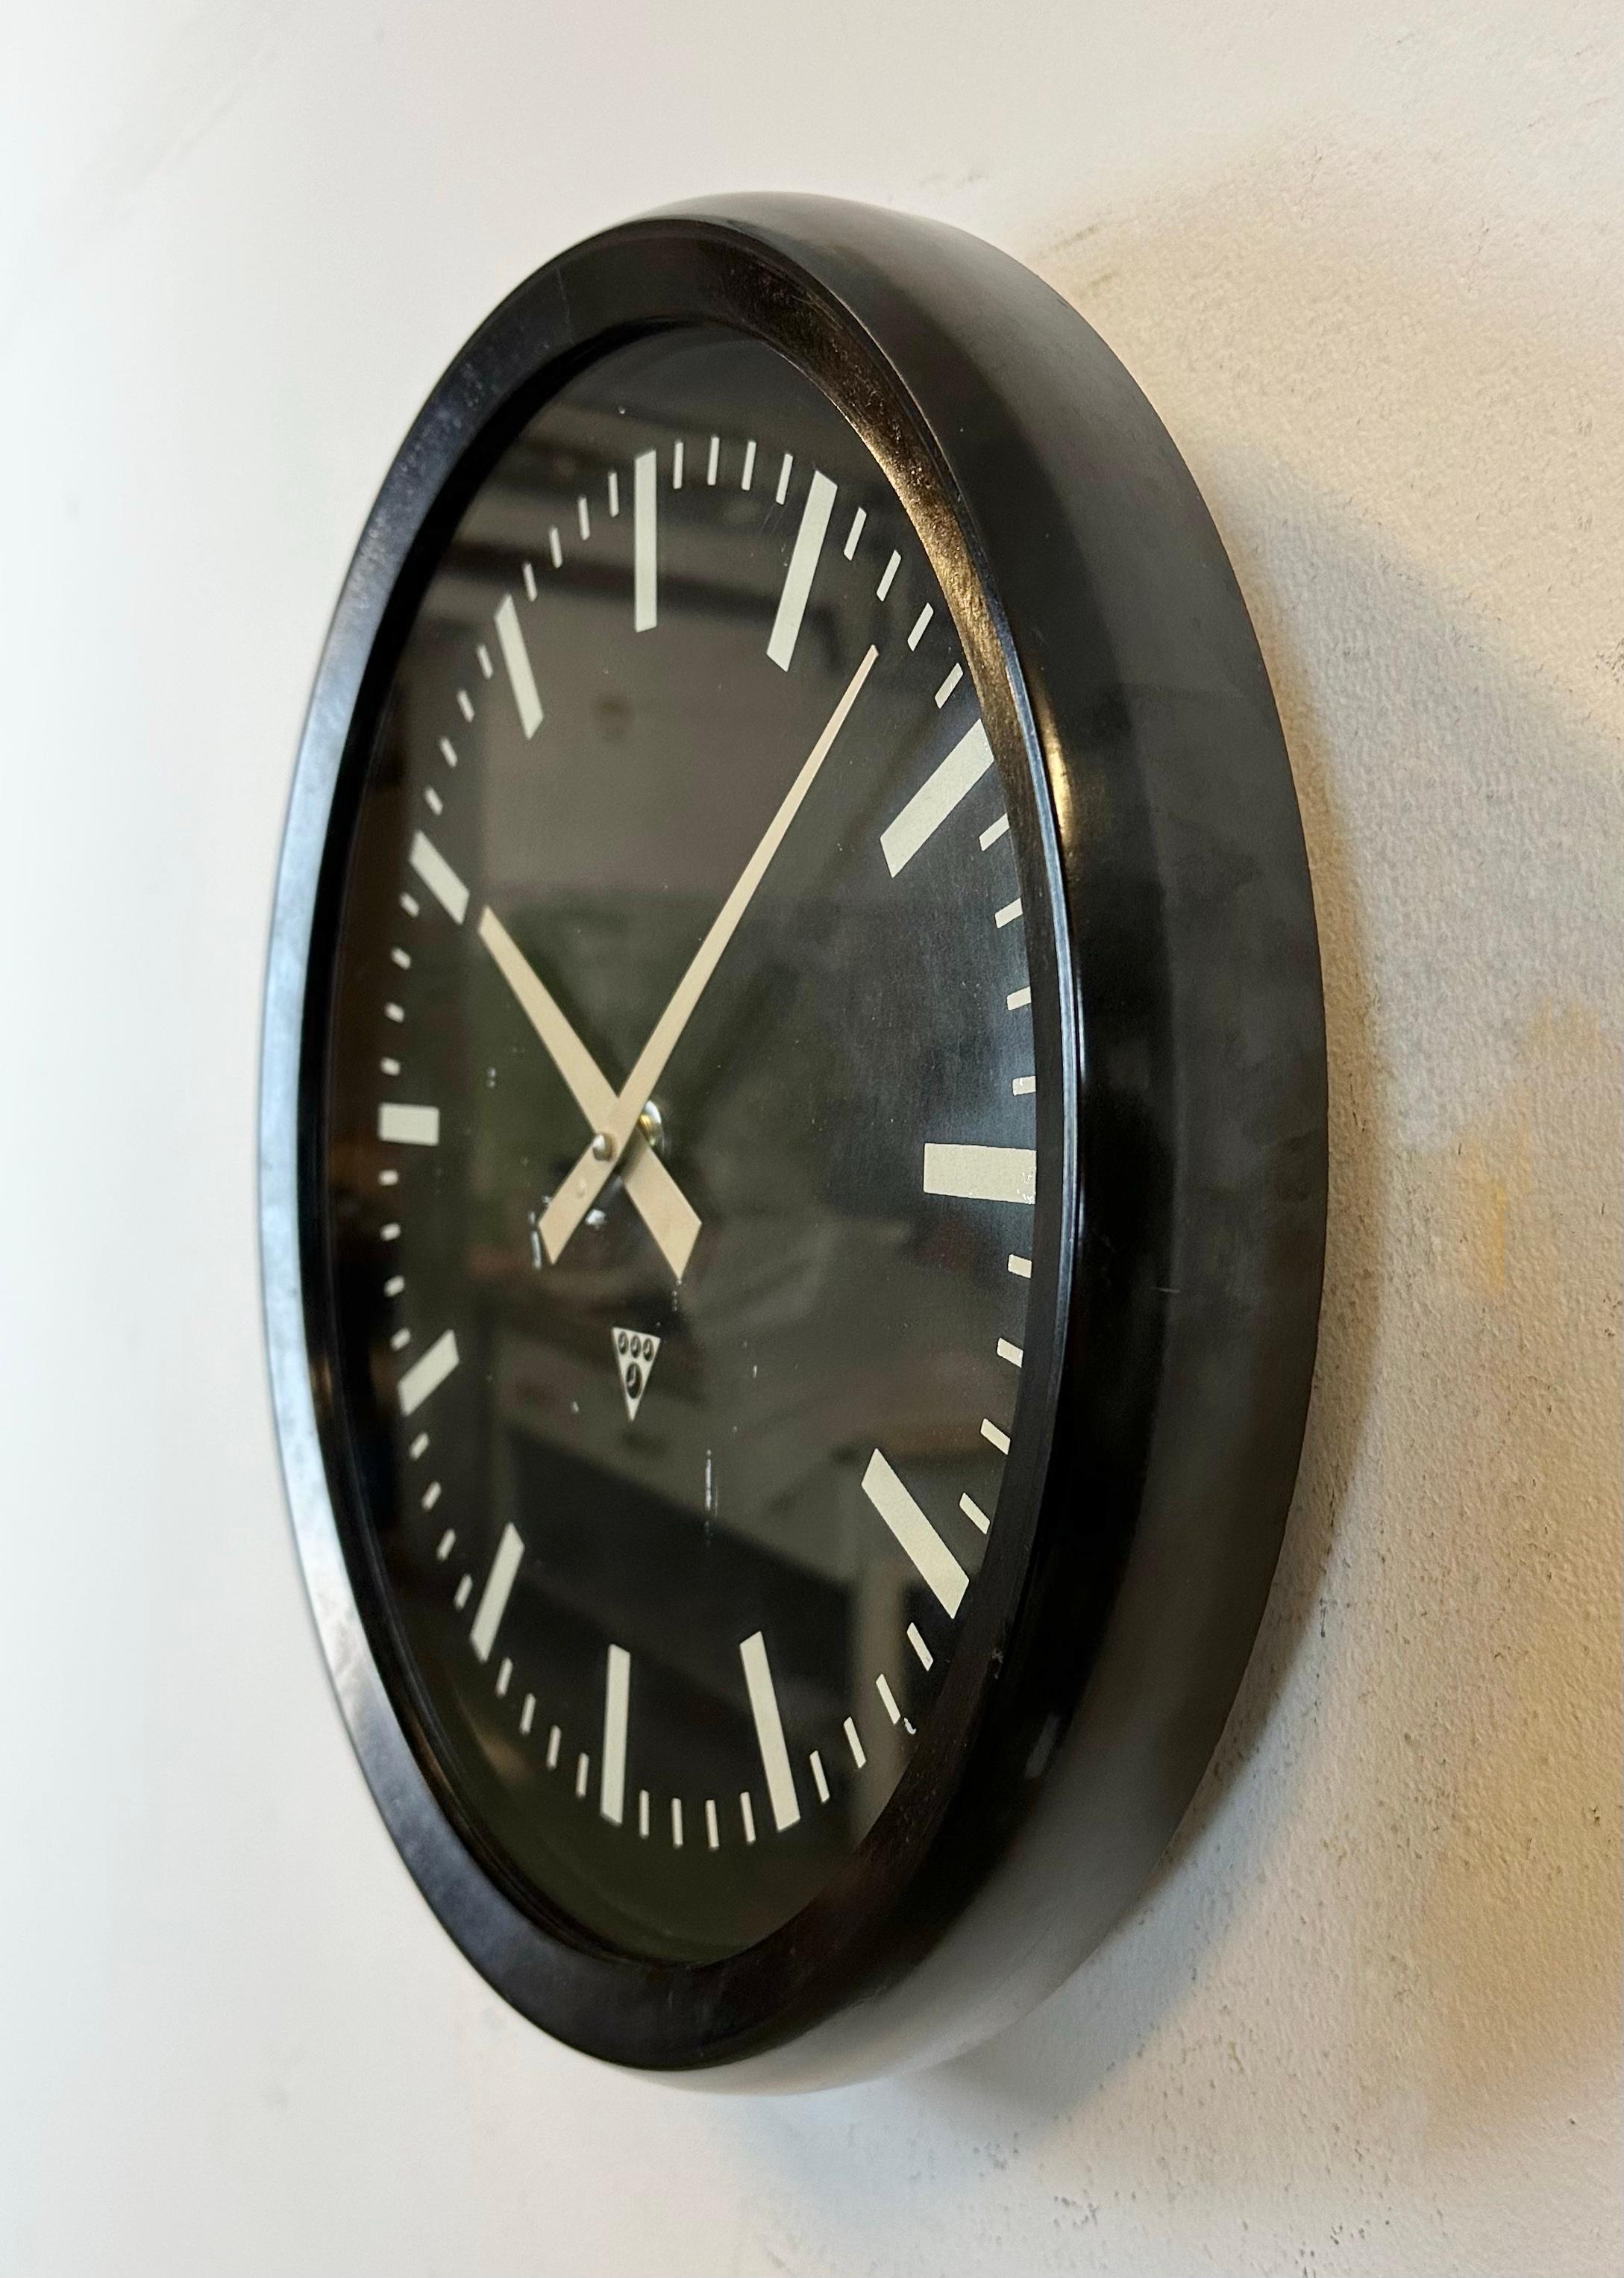 Diese Wanduhr wurde von Pragotron in der ehemaligen Tschechoslowakei in den 1970er Jahren hergestellt. Die Uhr hat einen dunkelbraunen (schwarzen) Bakelitrahmen, ein schwarzes Bakelit-Zifferblatt, Aluminiumzeiger und eine Klarglasabdeckung. Das